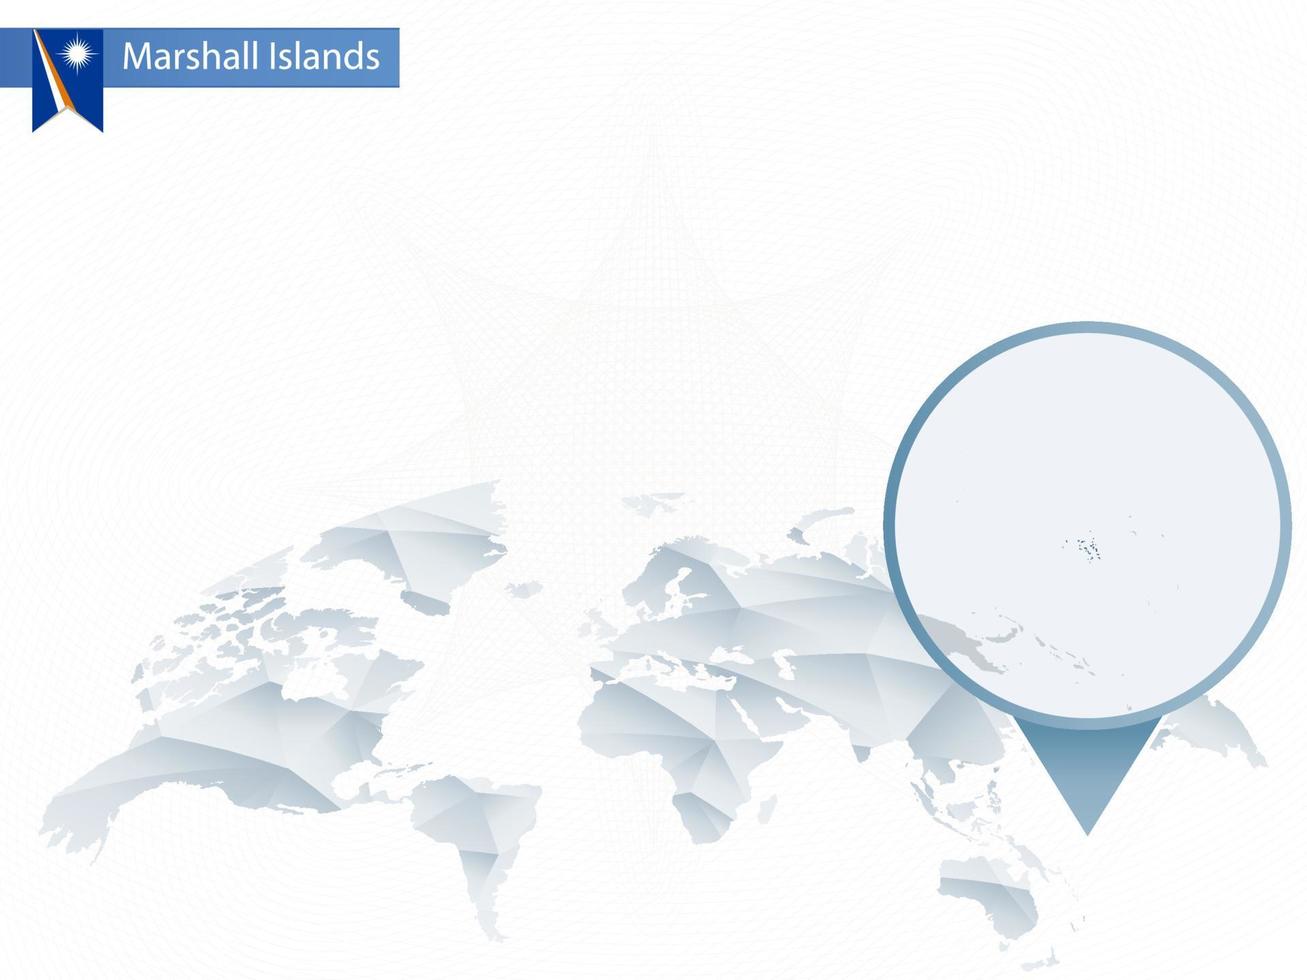 abstrakt rundad världskarta med nålade detaljerad Marshallöarna karta. vektor